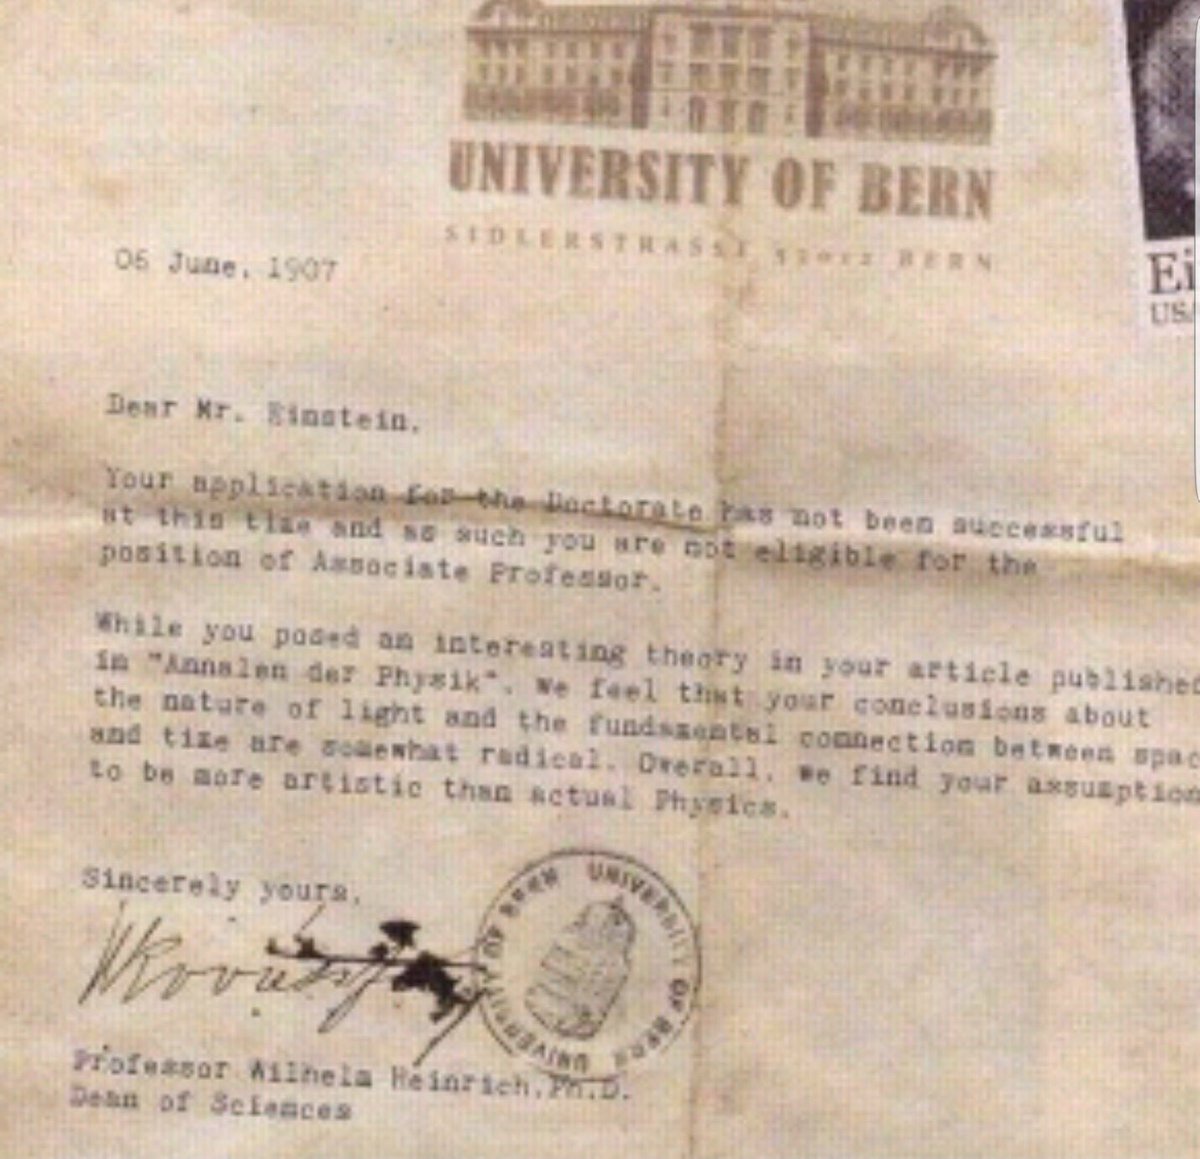 Einstein 06.June, 1907 | Die Einstein-Fälschung: http://www.unibe.ch/aktuell/uniaktuell/das_online_magazin_der_universitaet_bern/uniaktuell_ab_2015/rubriken/universitaet/die_einstein_faelschung/index_ger.html